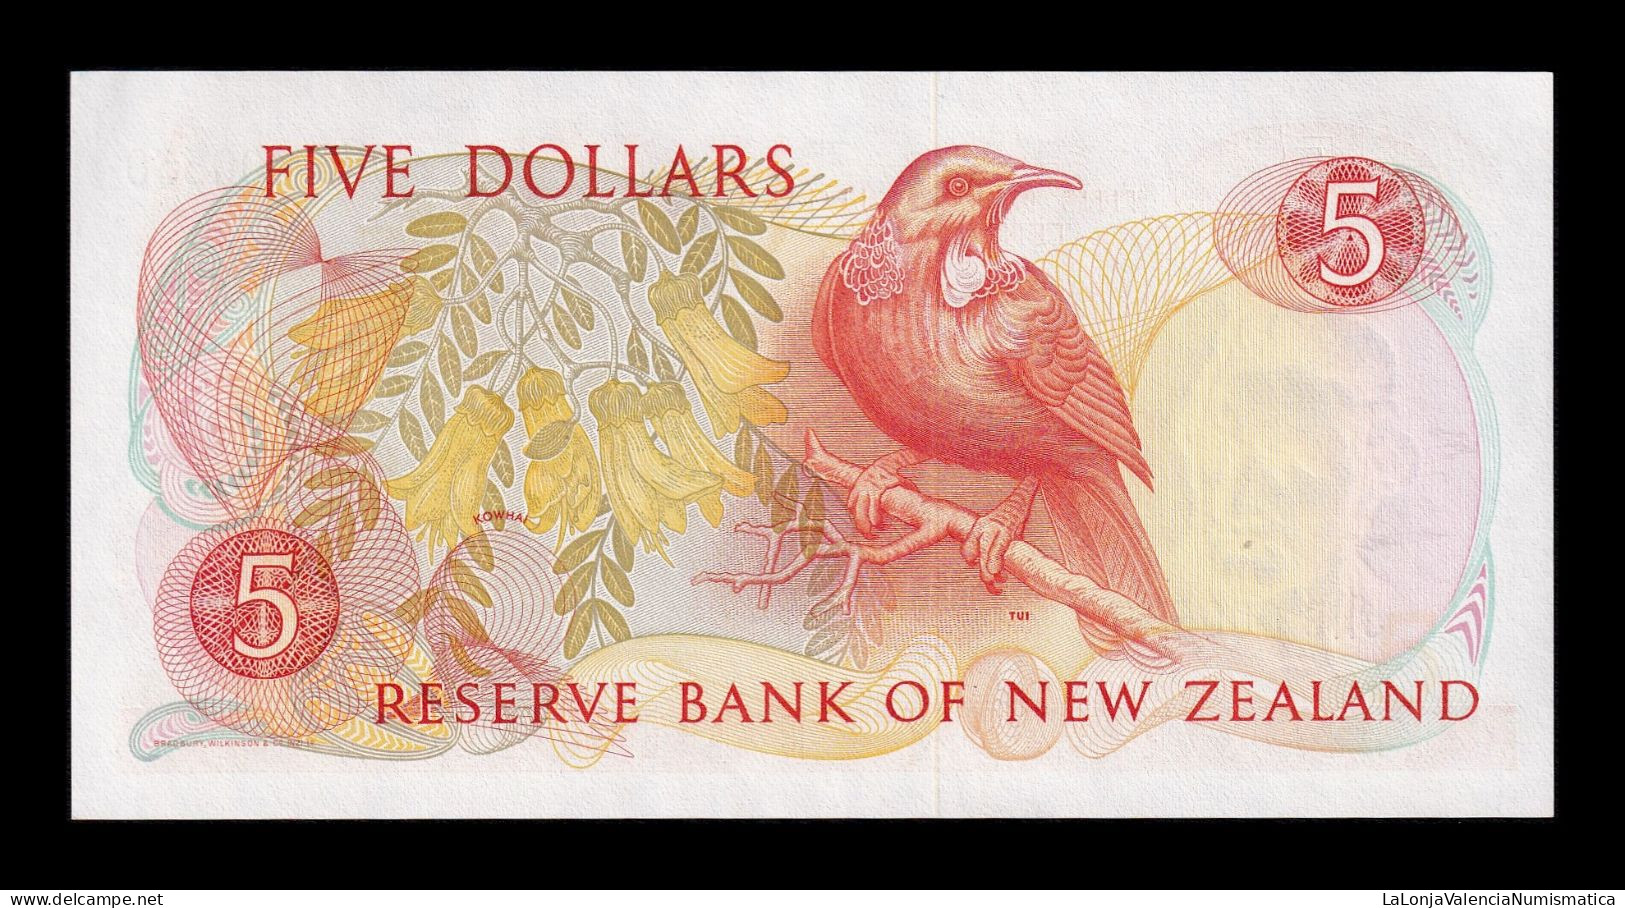 Nueva Zelanda New Zealand 5 Dollars ND (1981-1992) Pick 171c Sc Unc - Nieuw-Zeeland